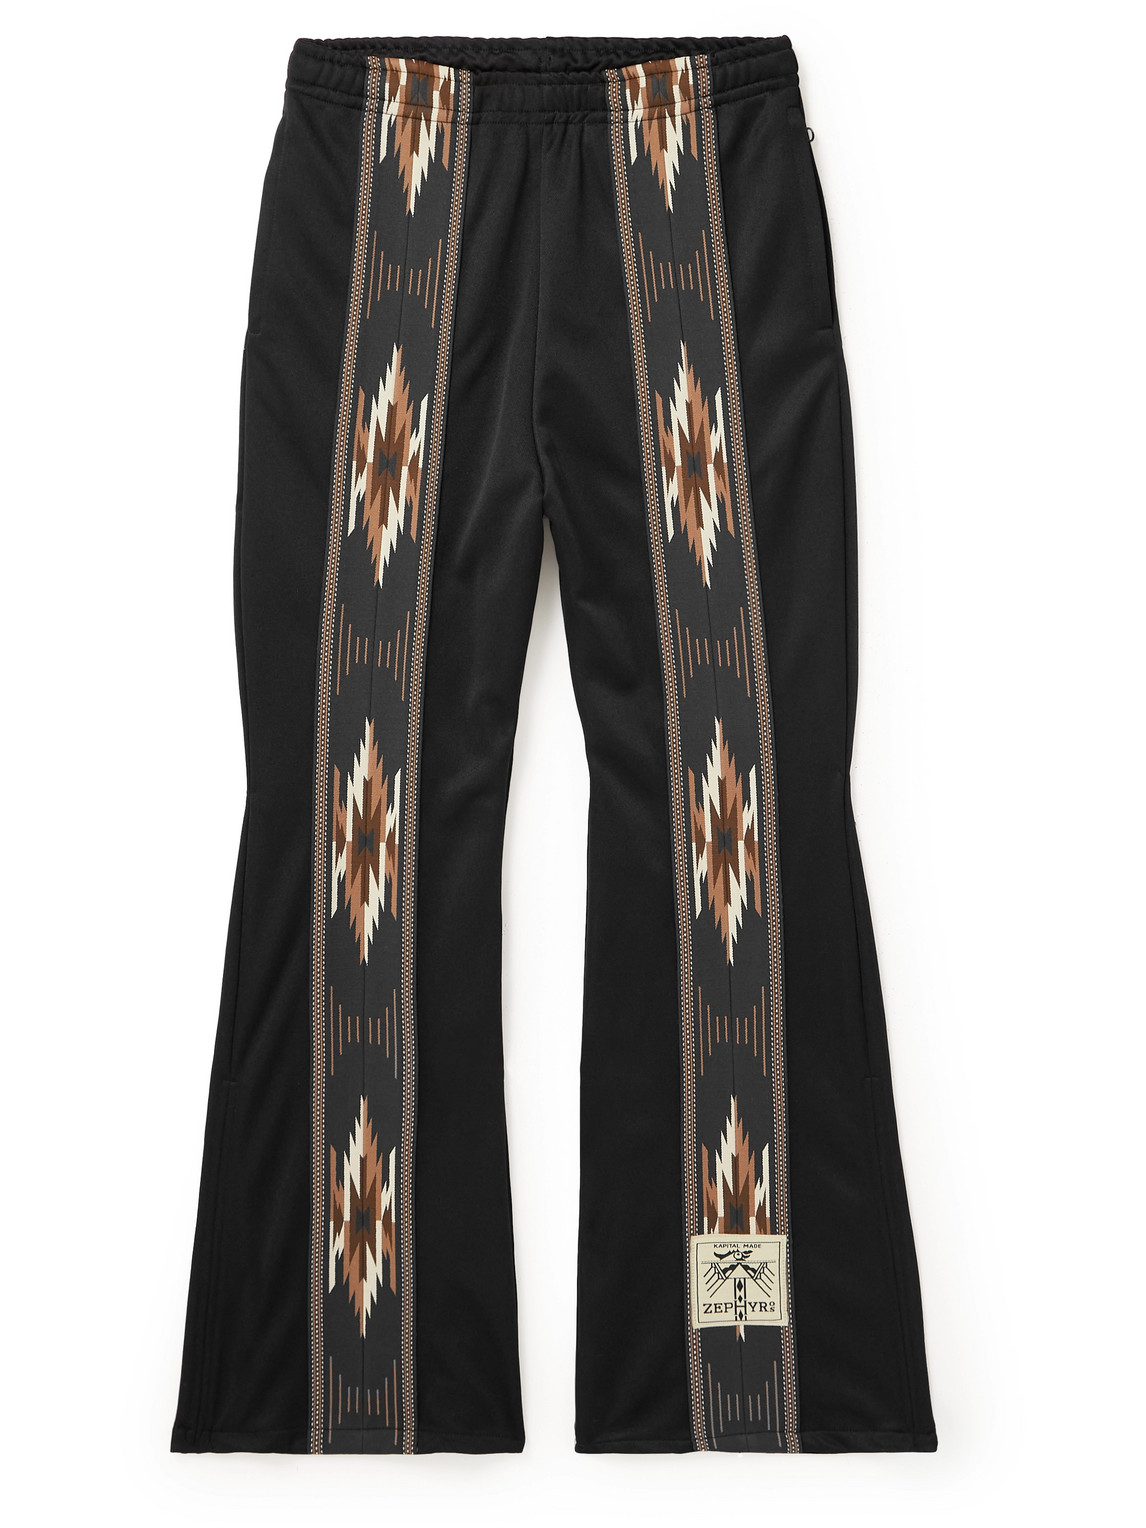 Kochi & Zephyr Straight-Leg Webbing-Trimmed Jersey Sweatpants